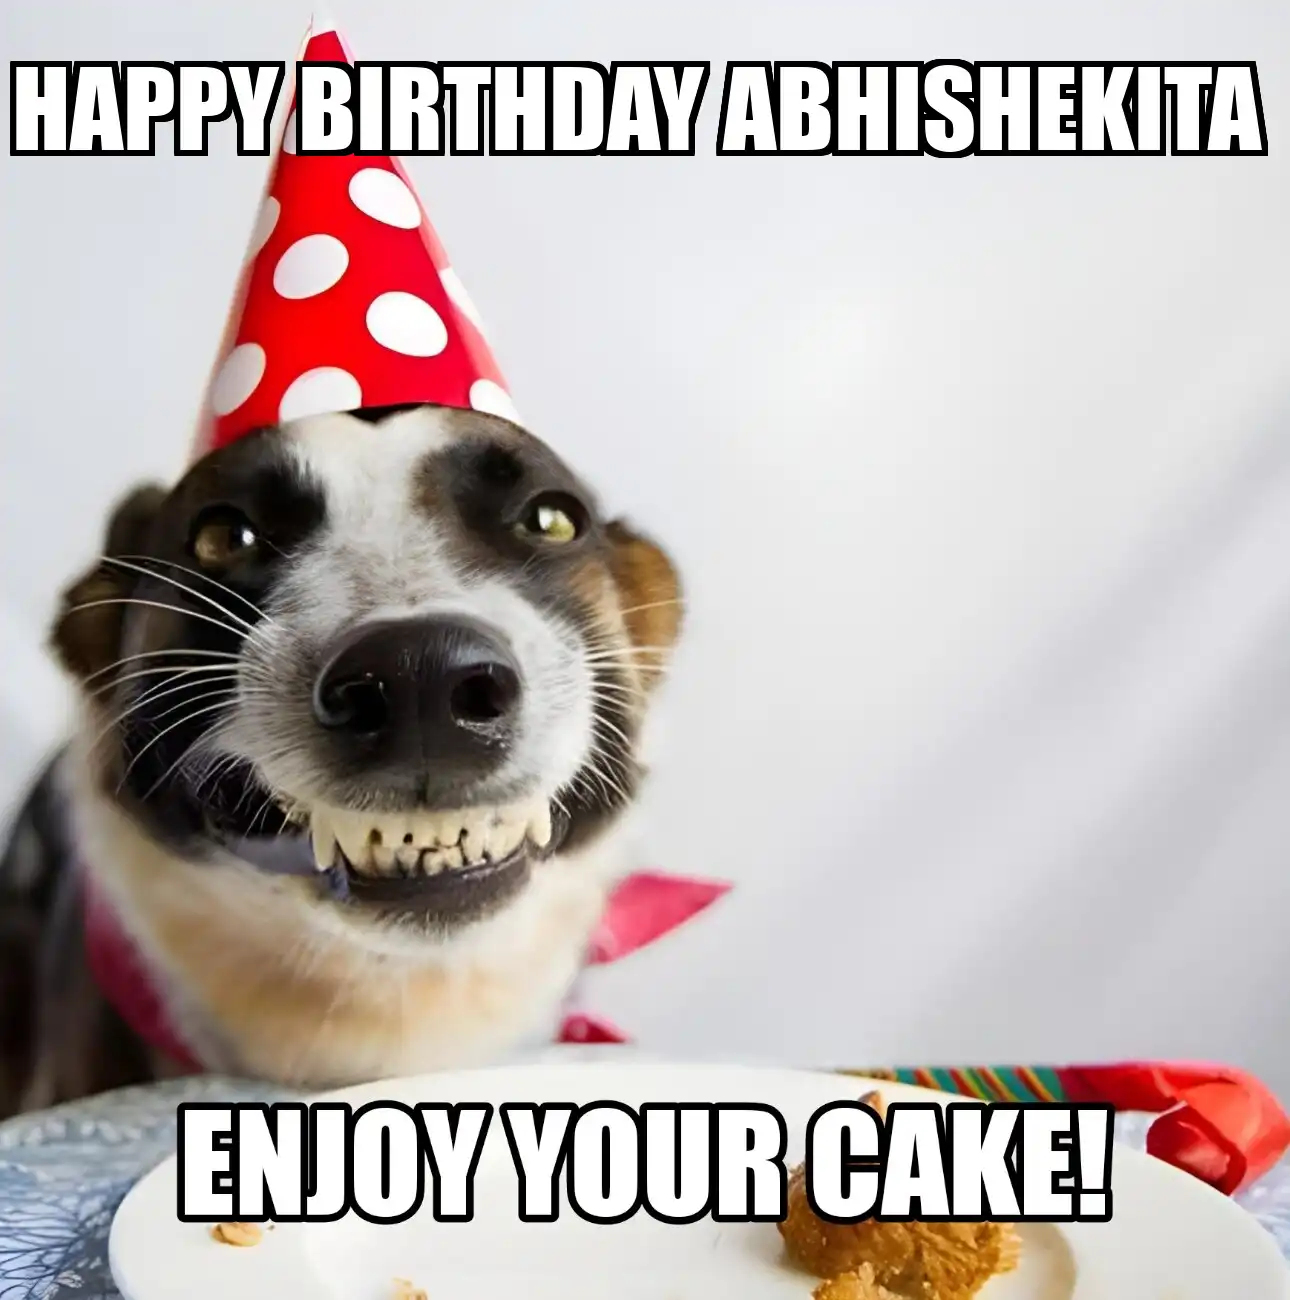 Happy Birthday Abhishekita Enjoy Your Cake Dog Meme